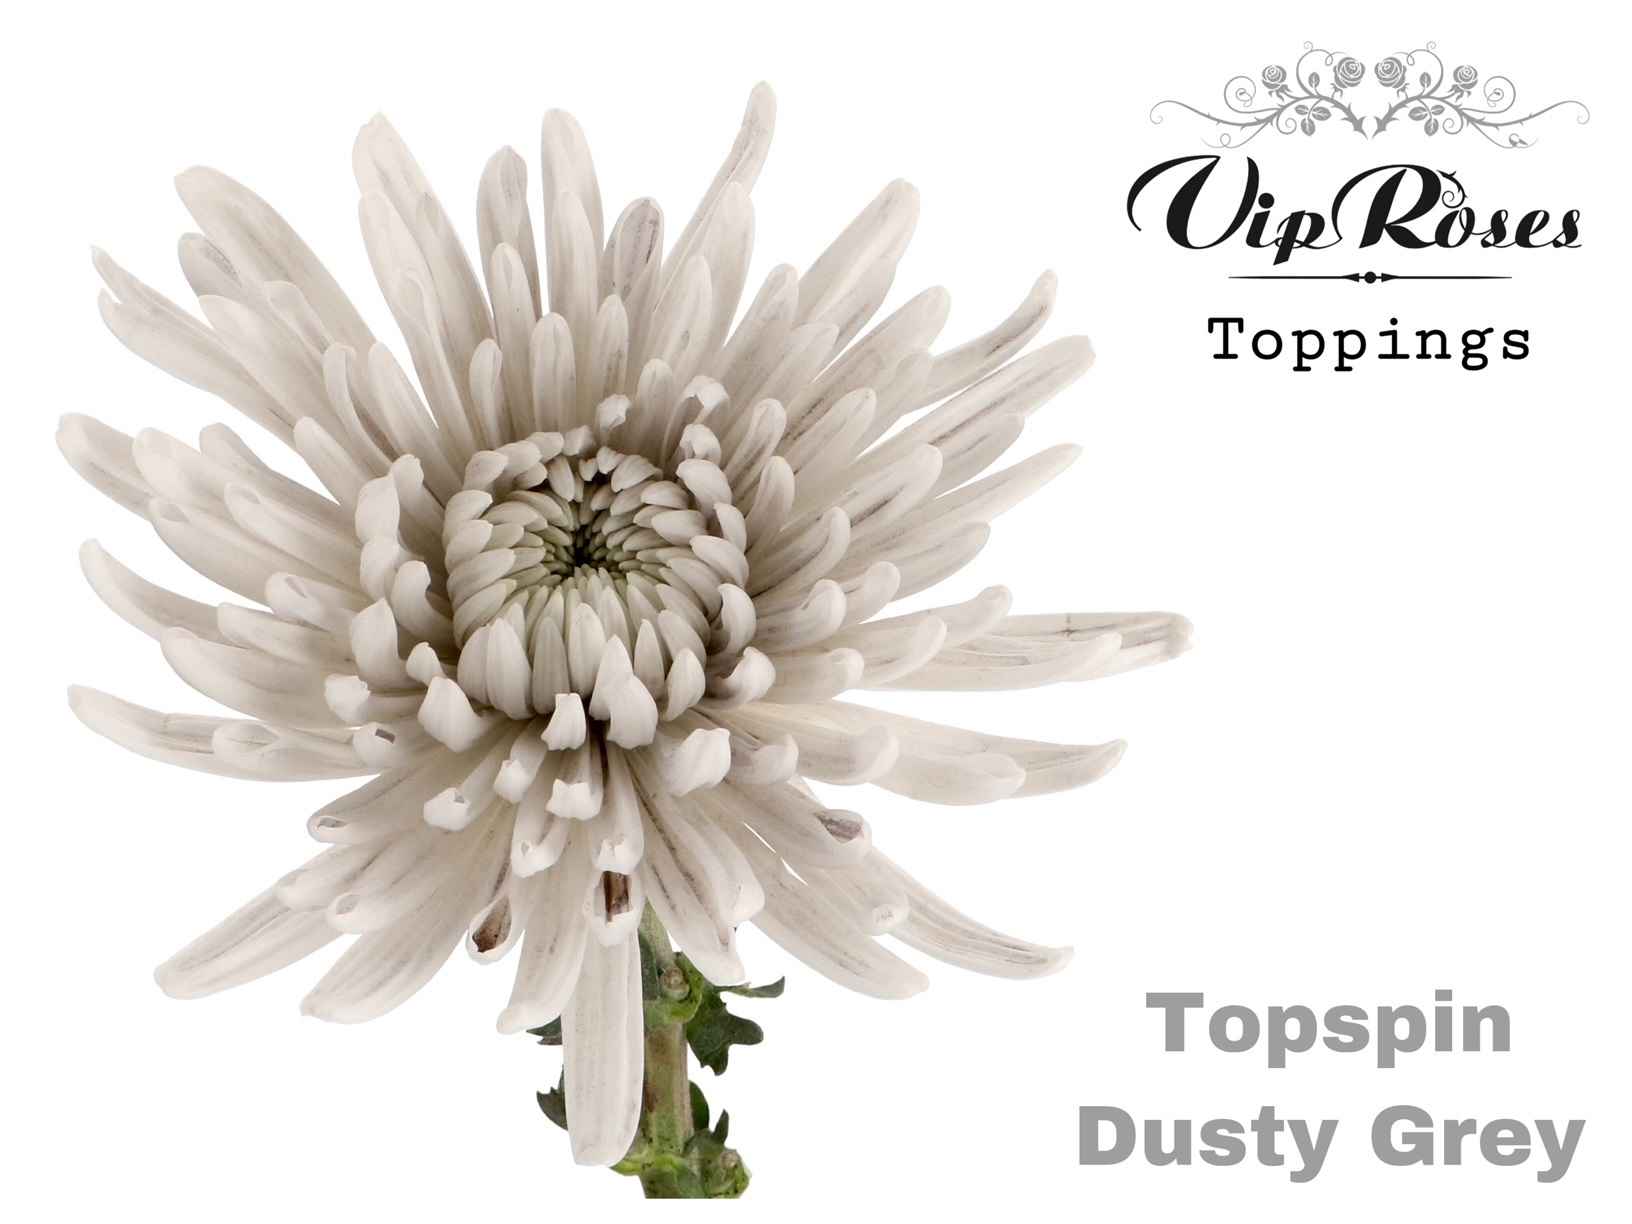 Срезанные цветы оптом Chrys bl paint topspin dusty grey от 20шт из Голландии с доставкой по России